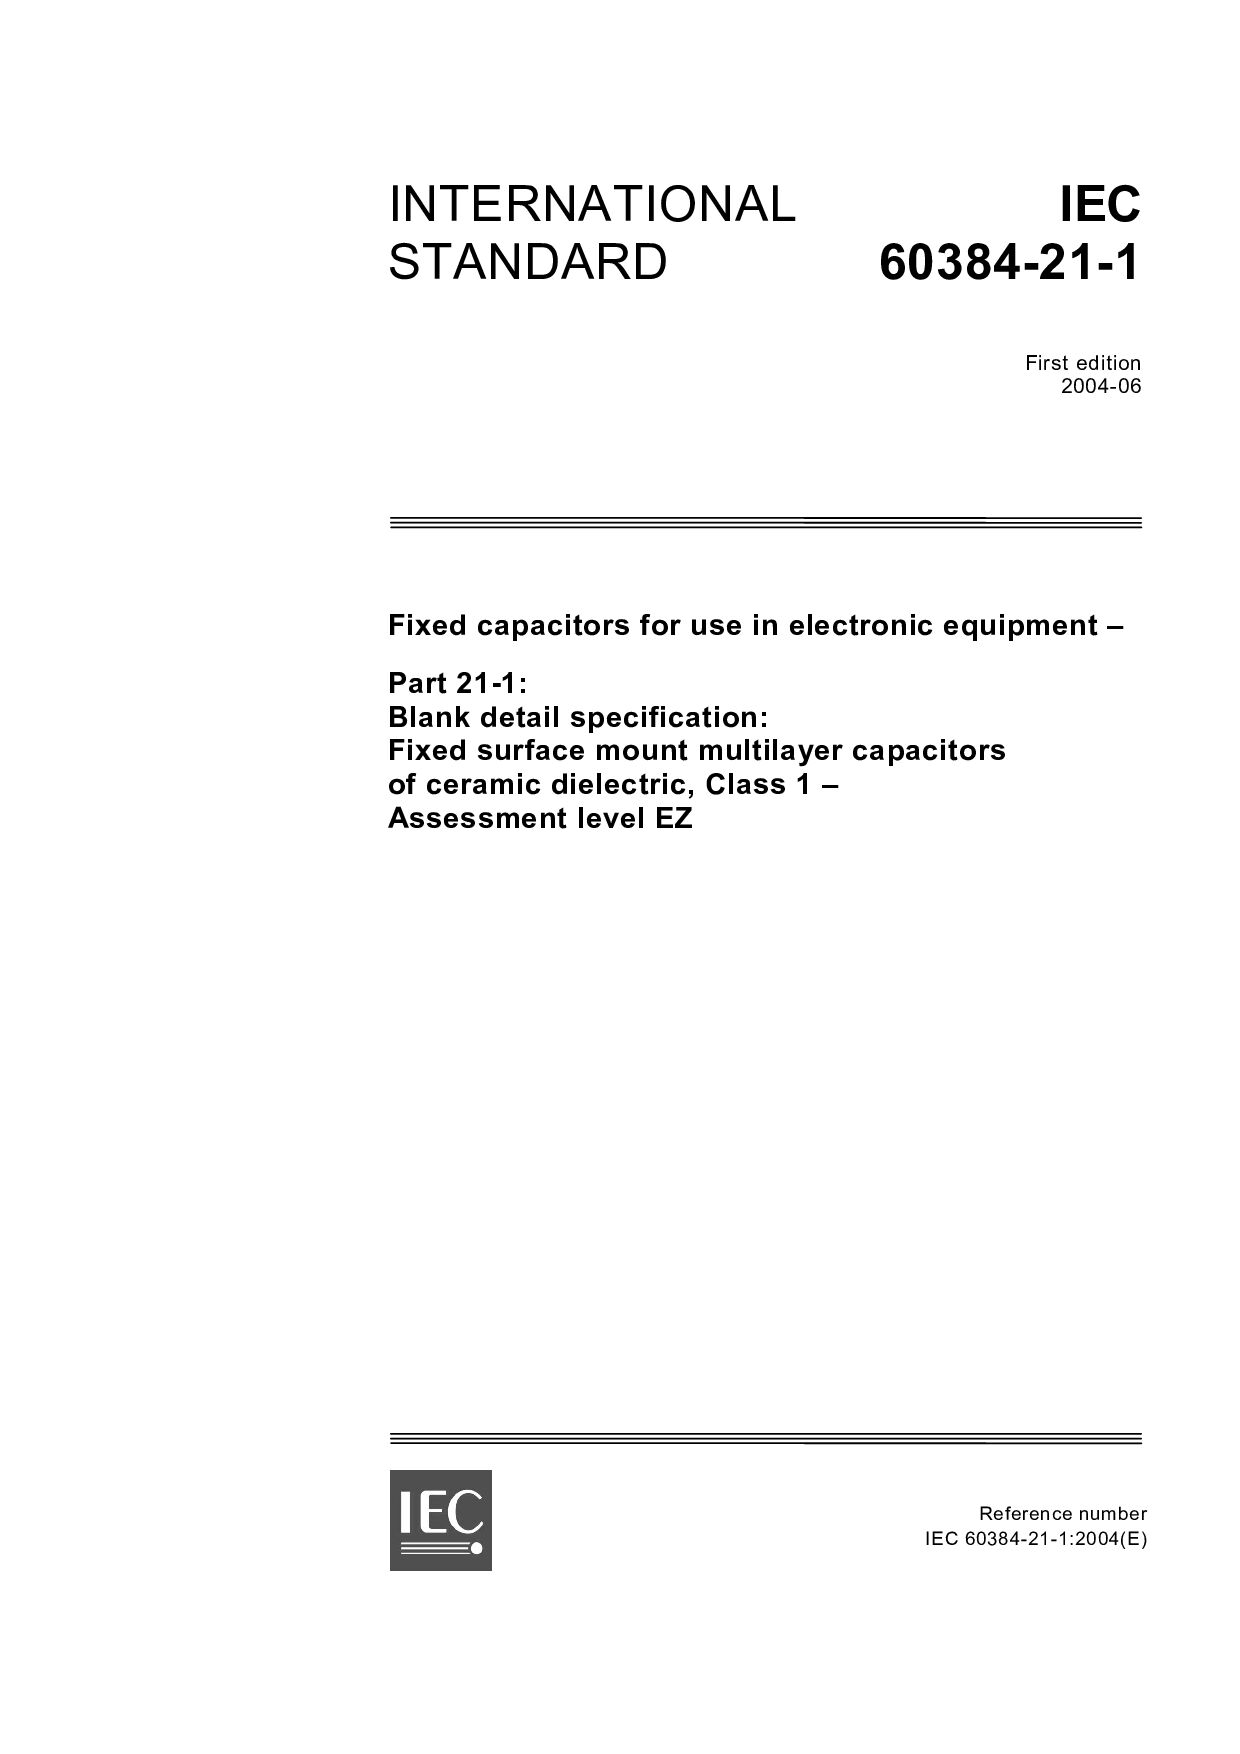 IEC 60384-21-1:2004